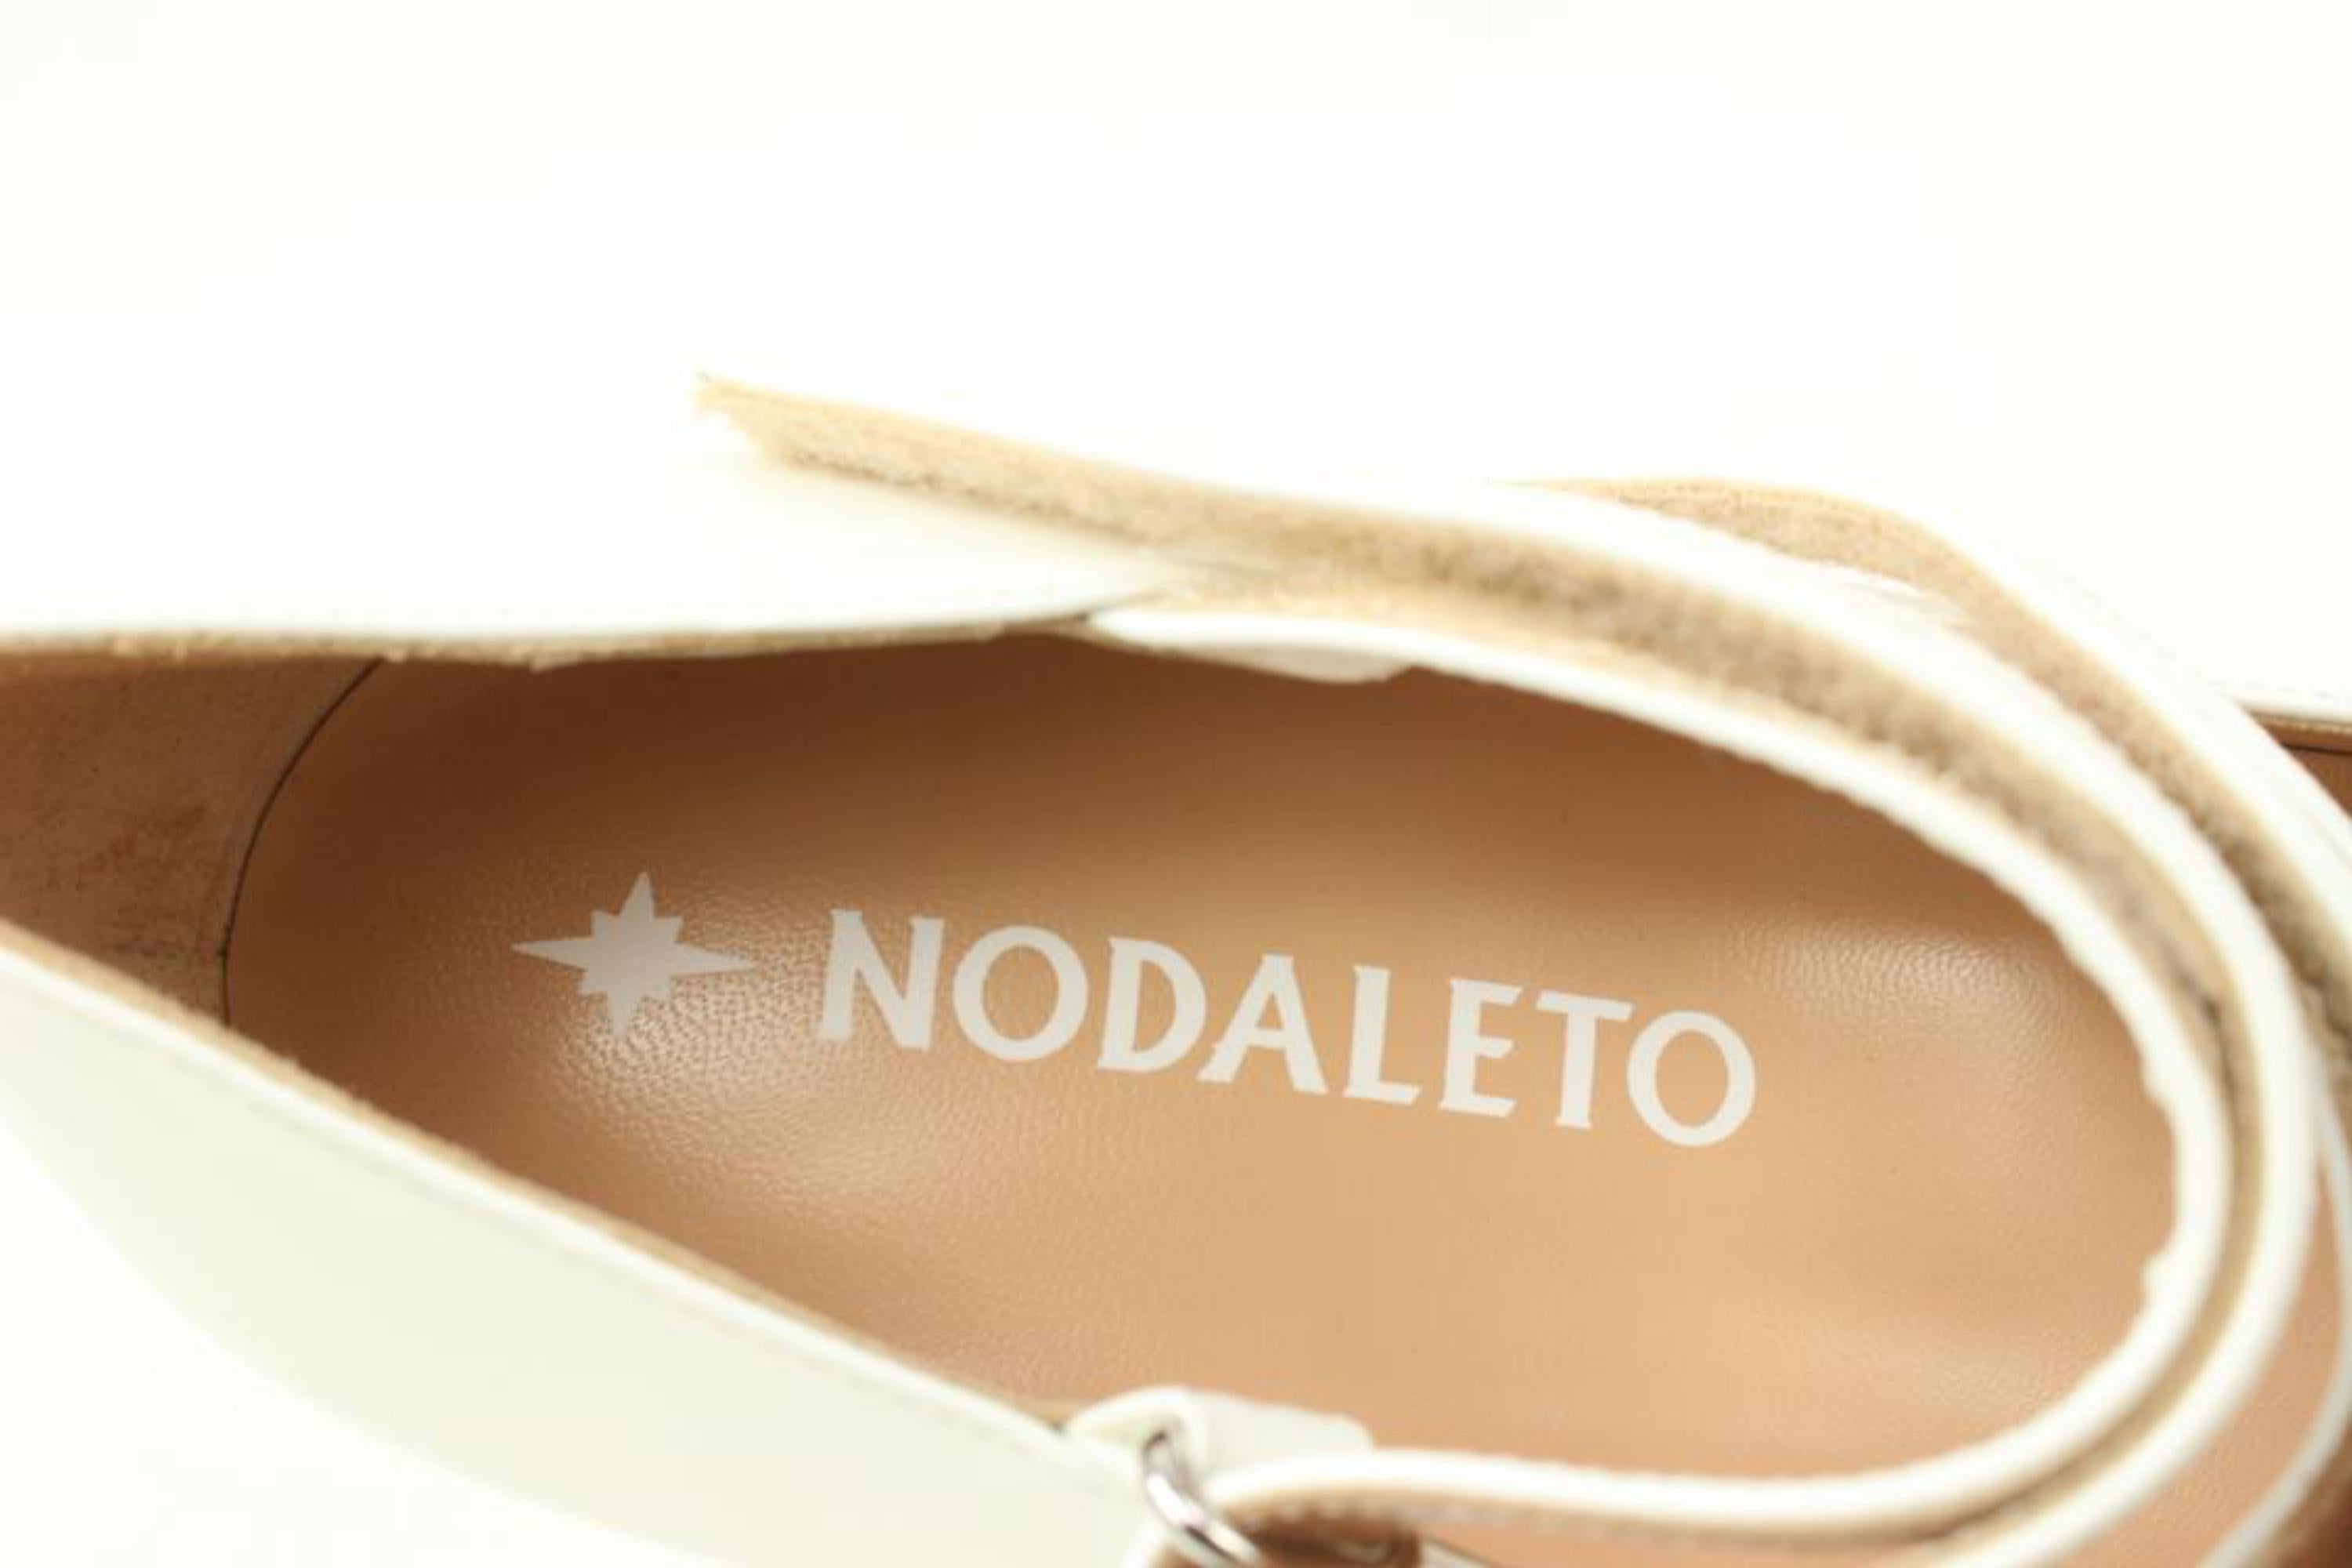 Nodaleto Chaussures à plateforme Bulla Babies en cuir verni et céramique, Taille 40, 47n321
Fabriqué à : Venise
Mesures : Longueur :  10.5